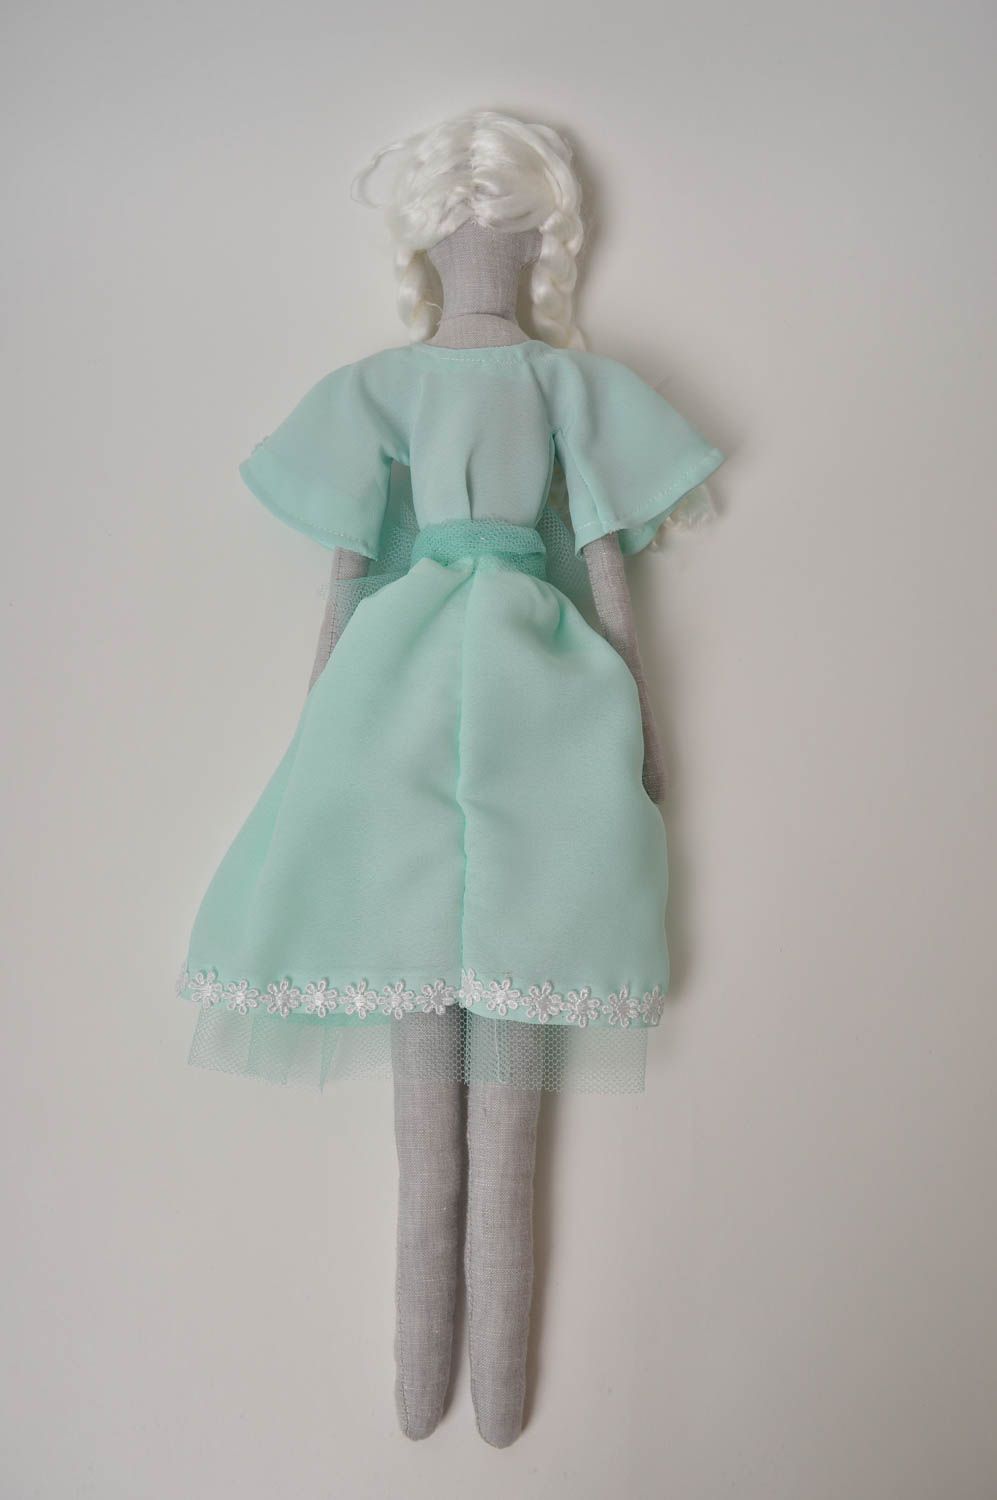 Muñeco artesanal con vestido celeste juguete original elemento decorativo foto 5